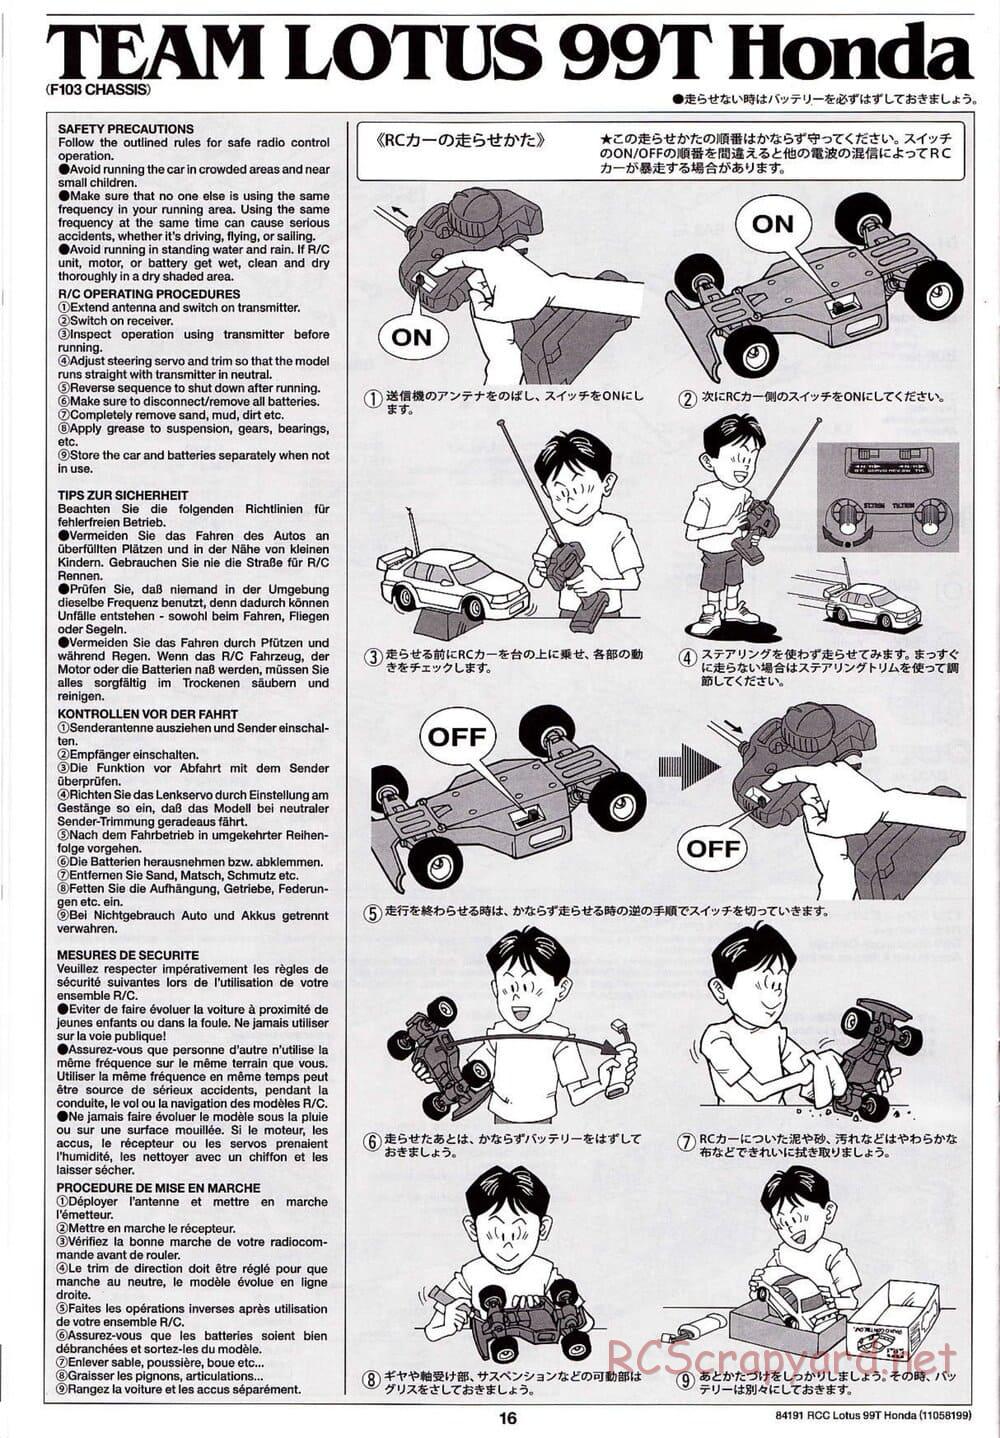 Tamiya - Team Lotus 99T Honda - F103 Chassis - Manual - Page 16